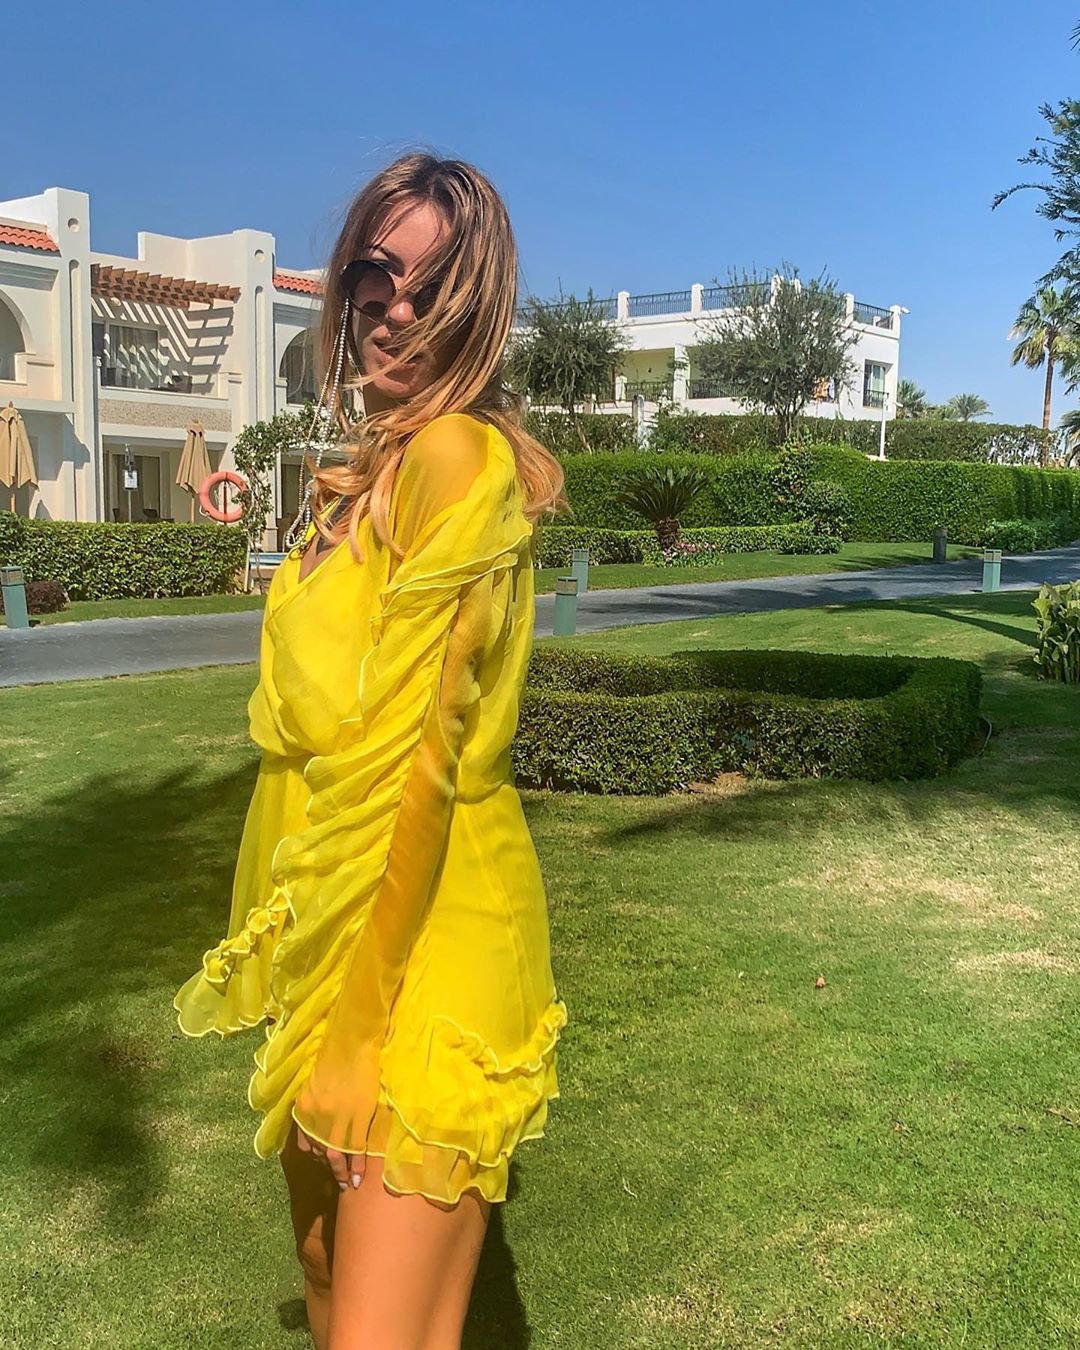 Леся Никитюк в желтом платье с декольте 'до пупка' показала длинные ножки - фото 455616